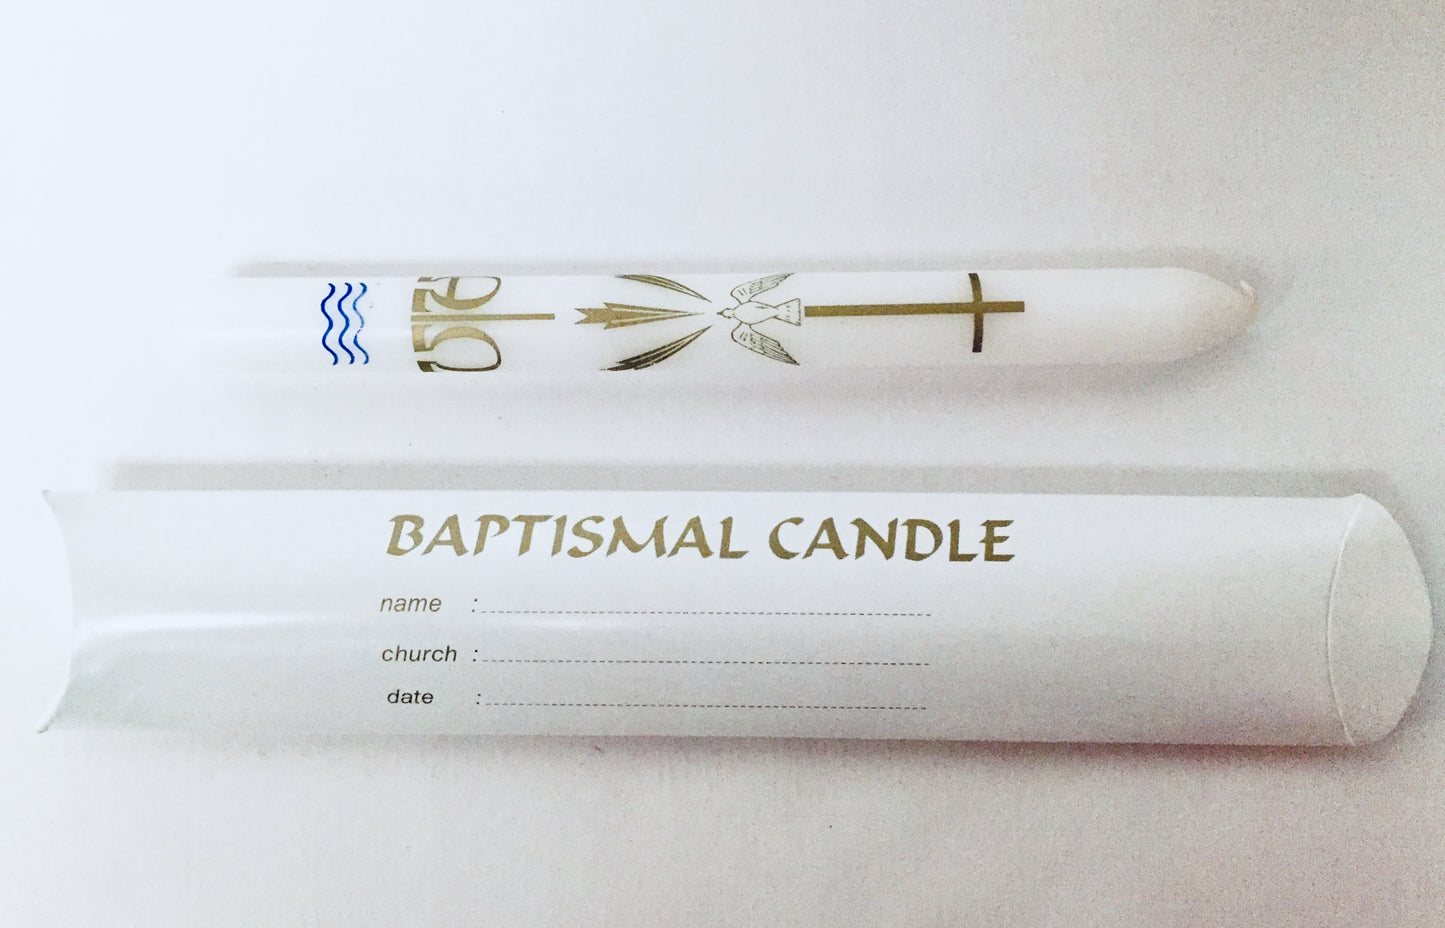 Baptismal candle - Pillow box 7/8 x 9" (20)